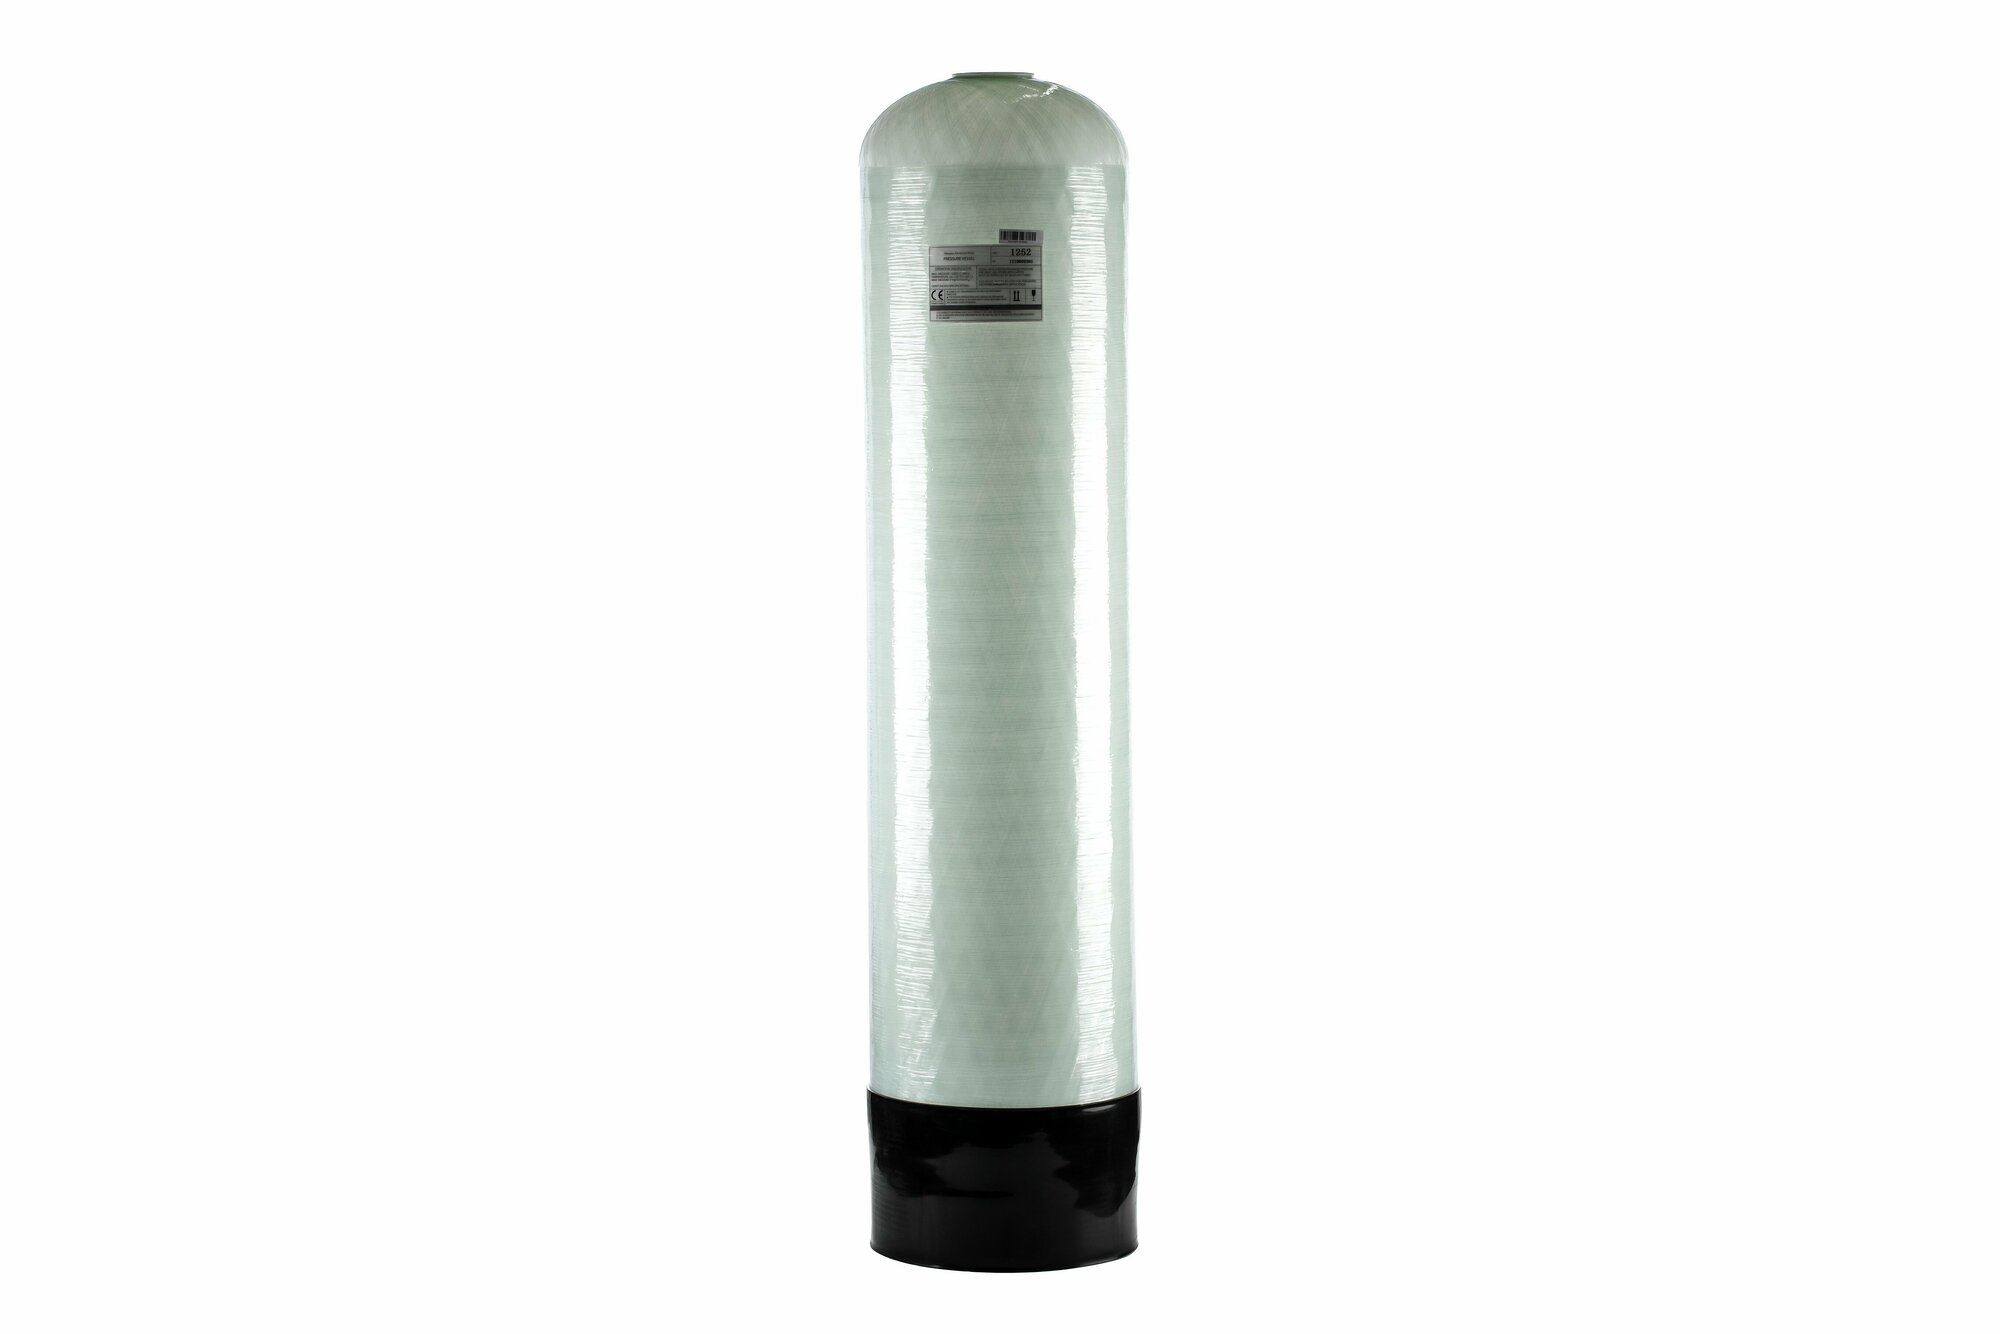 Корпус (баллон) засыпного фильтра Canature 1252 для водоподготовки с ДРС